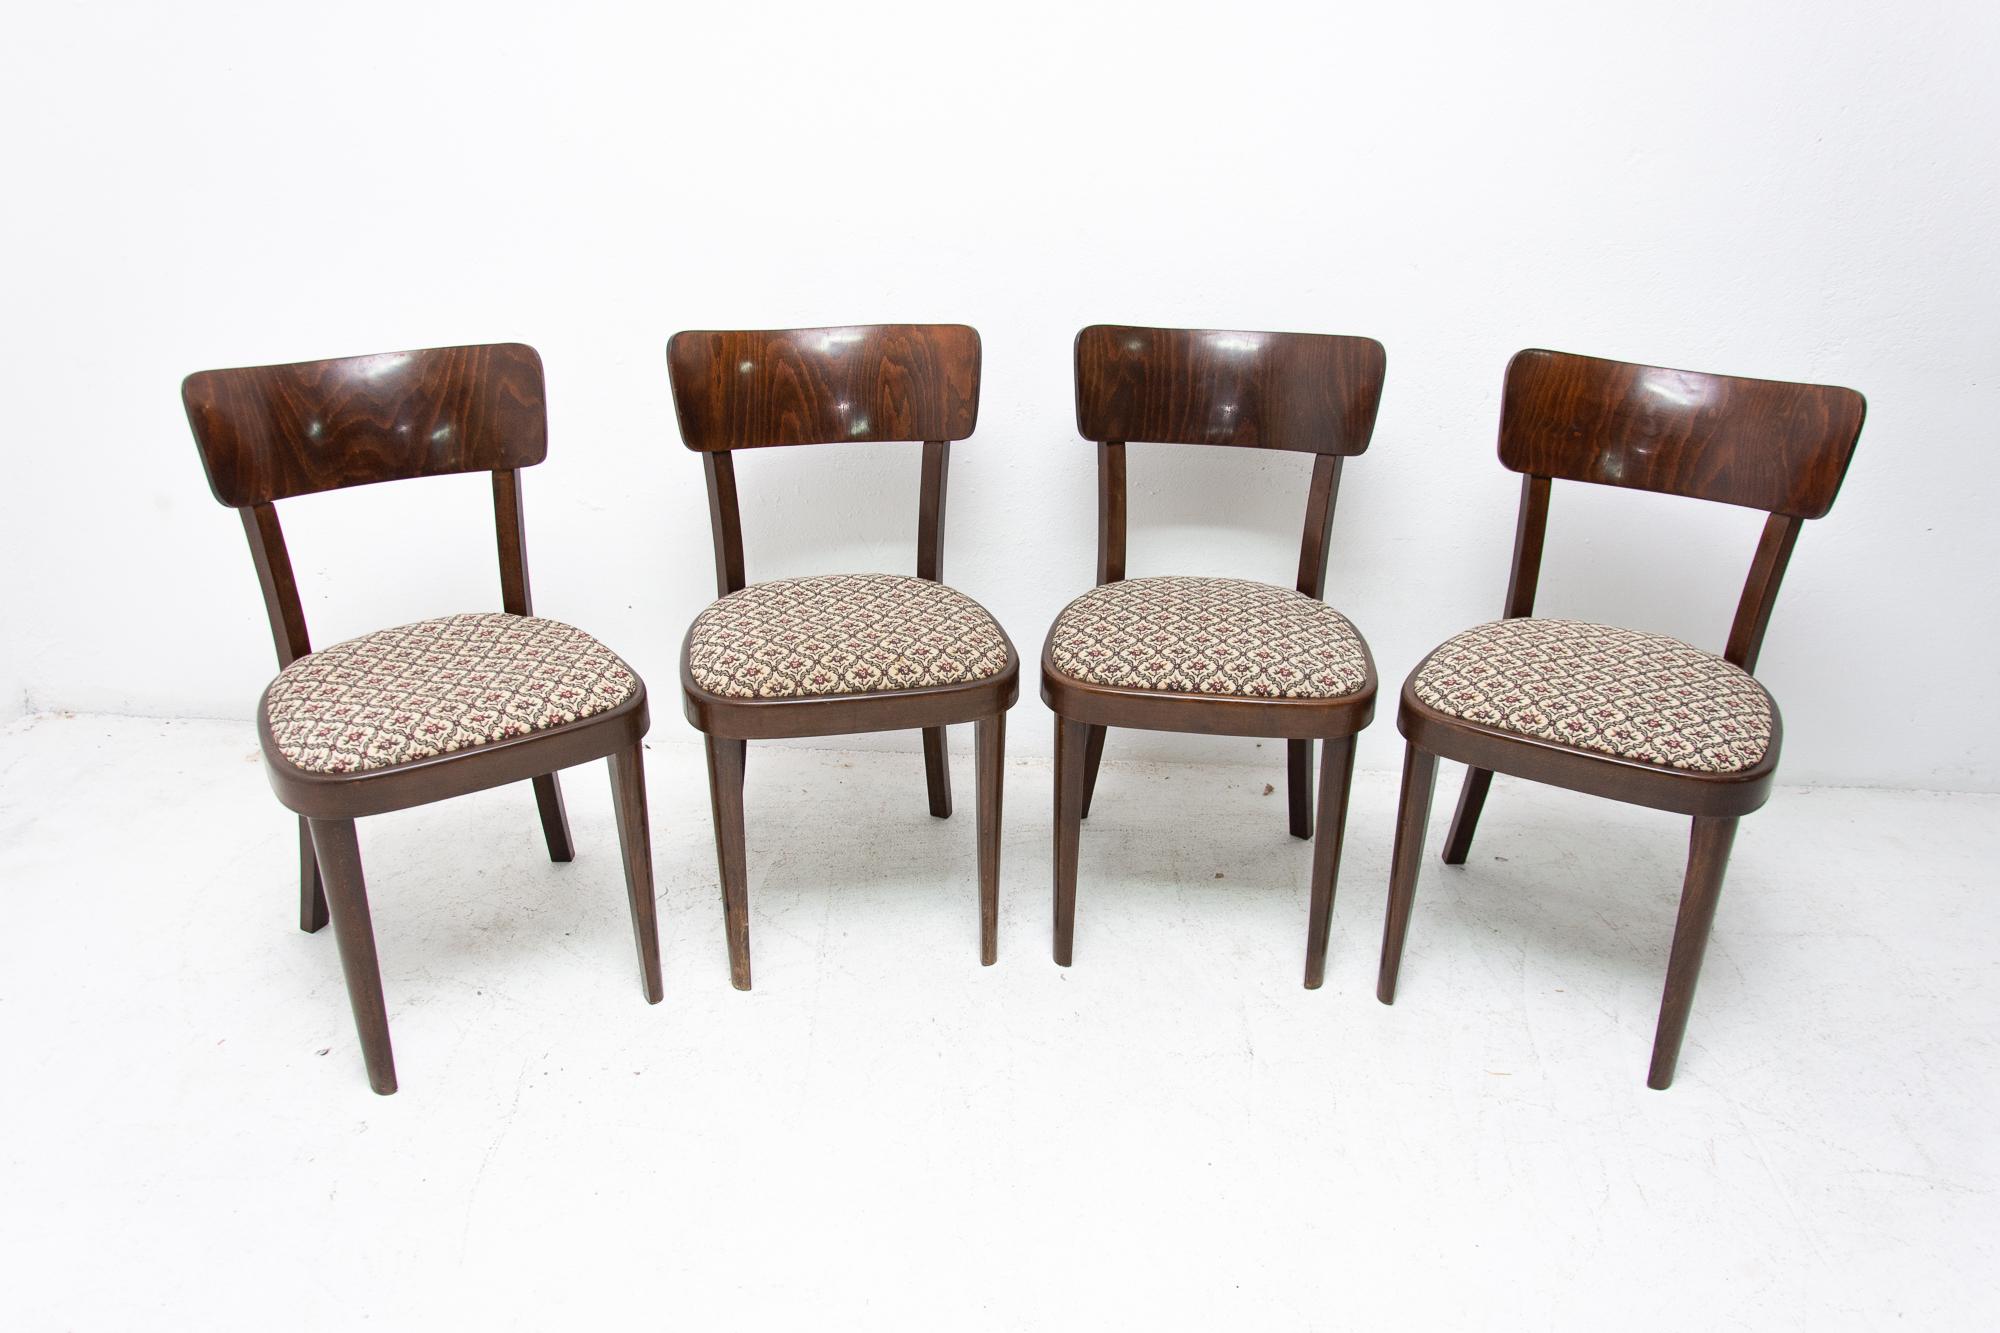 Esstischstühle Thonet, hergestellt in der Tschechoslowakei, 1950er Jahre. Walnussfurnier, gepolsterte Sitze. In sehr gutem Vintage-Zustand, mit dem Alter der Stühle entsprechenden Gebrauchsspuren. Der Preis gilt für das Viererset.